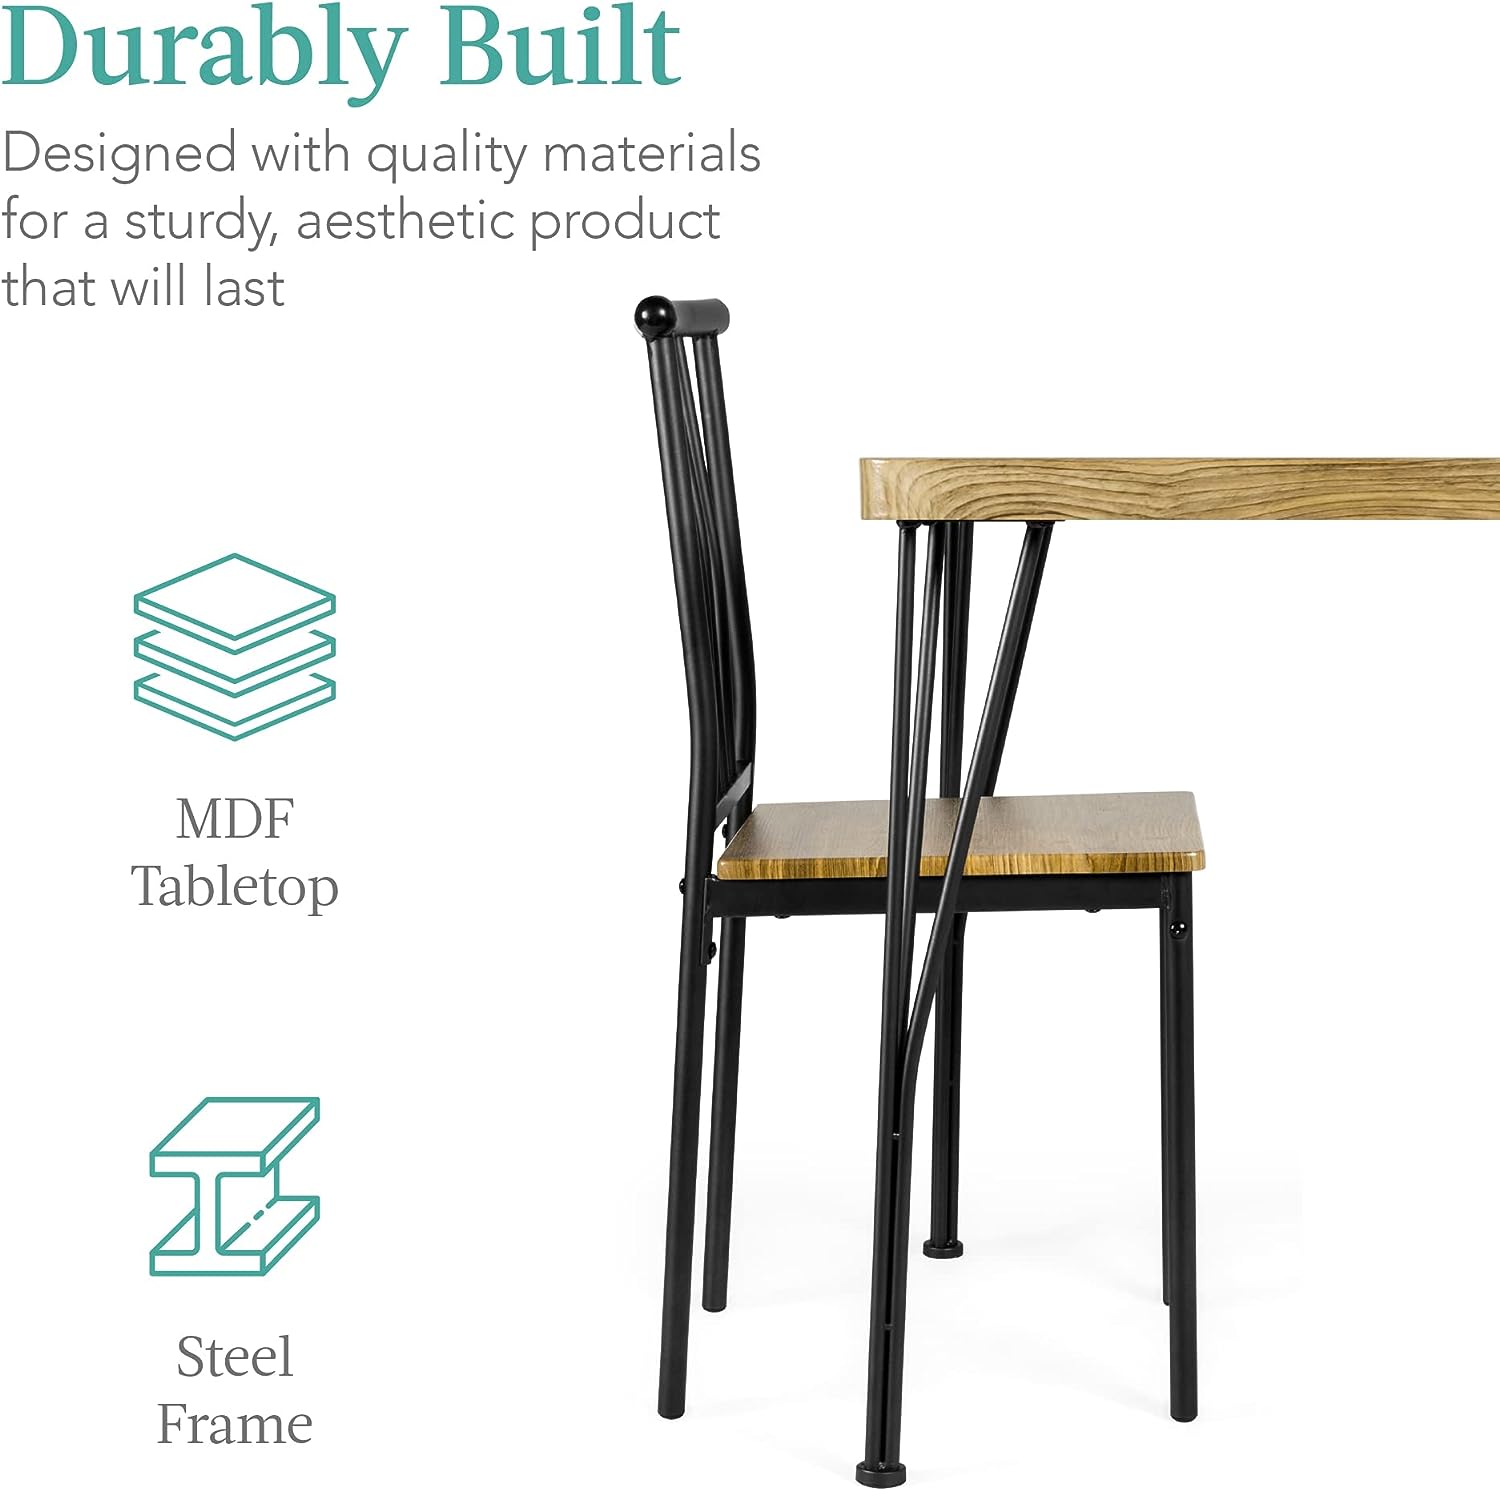 Juego de 5 muebles de mesa de comedor rectangulares modernos de metal y madera